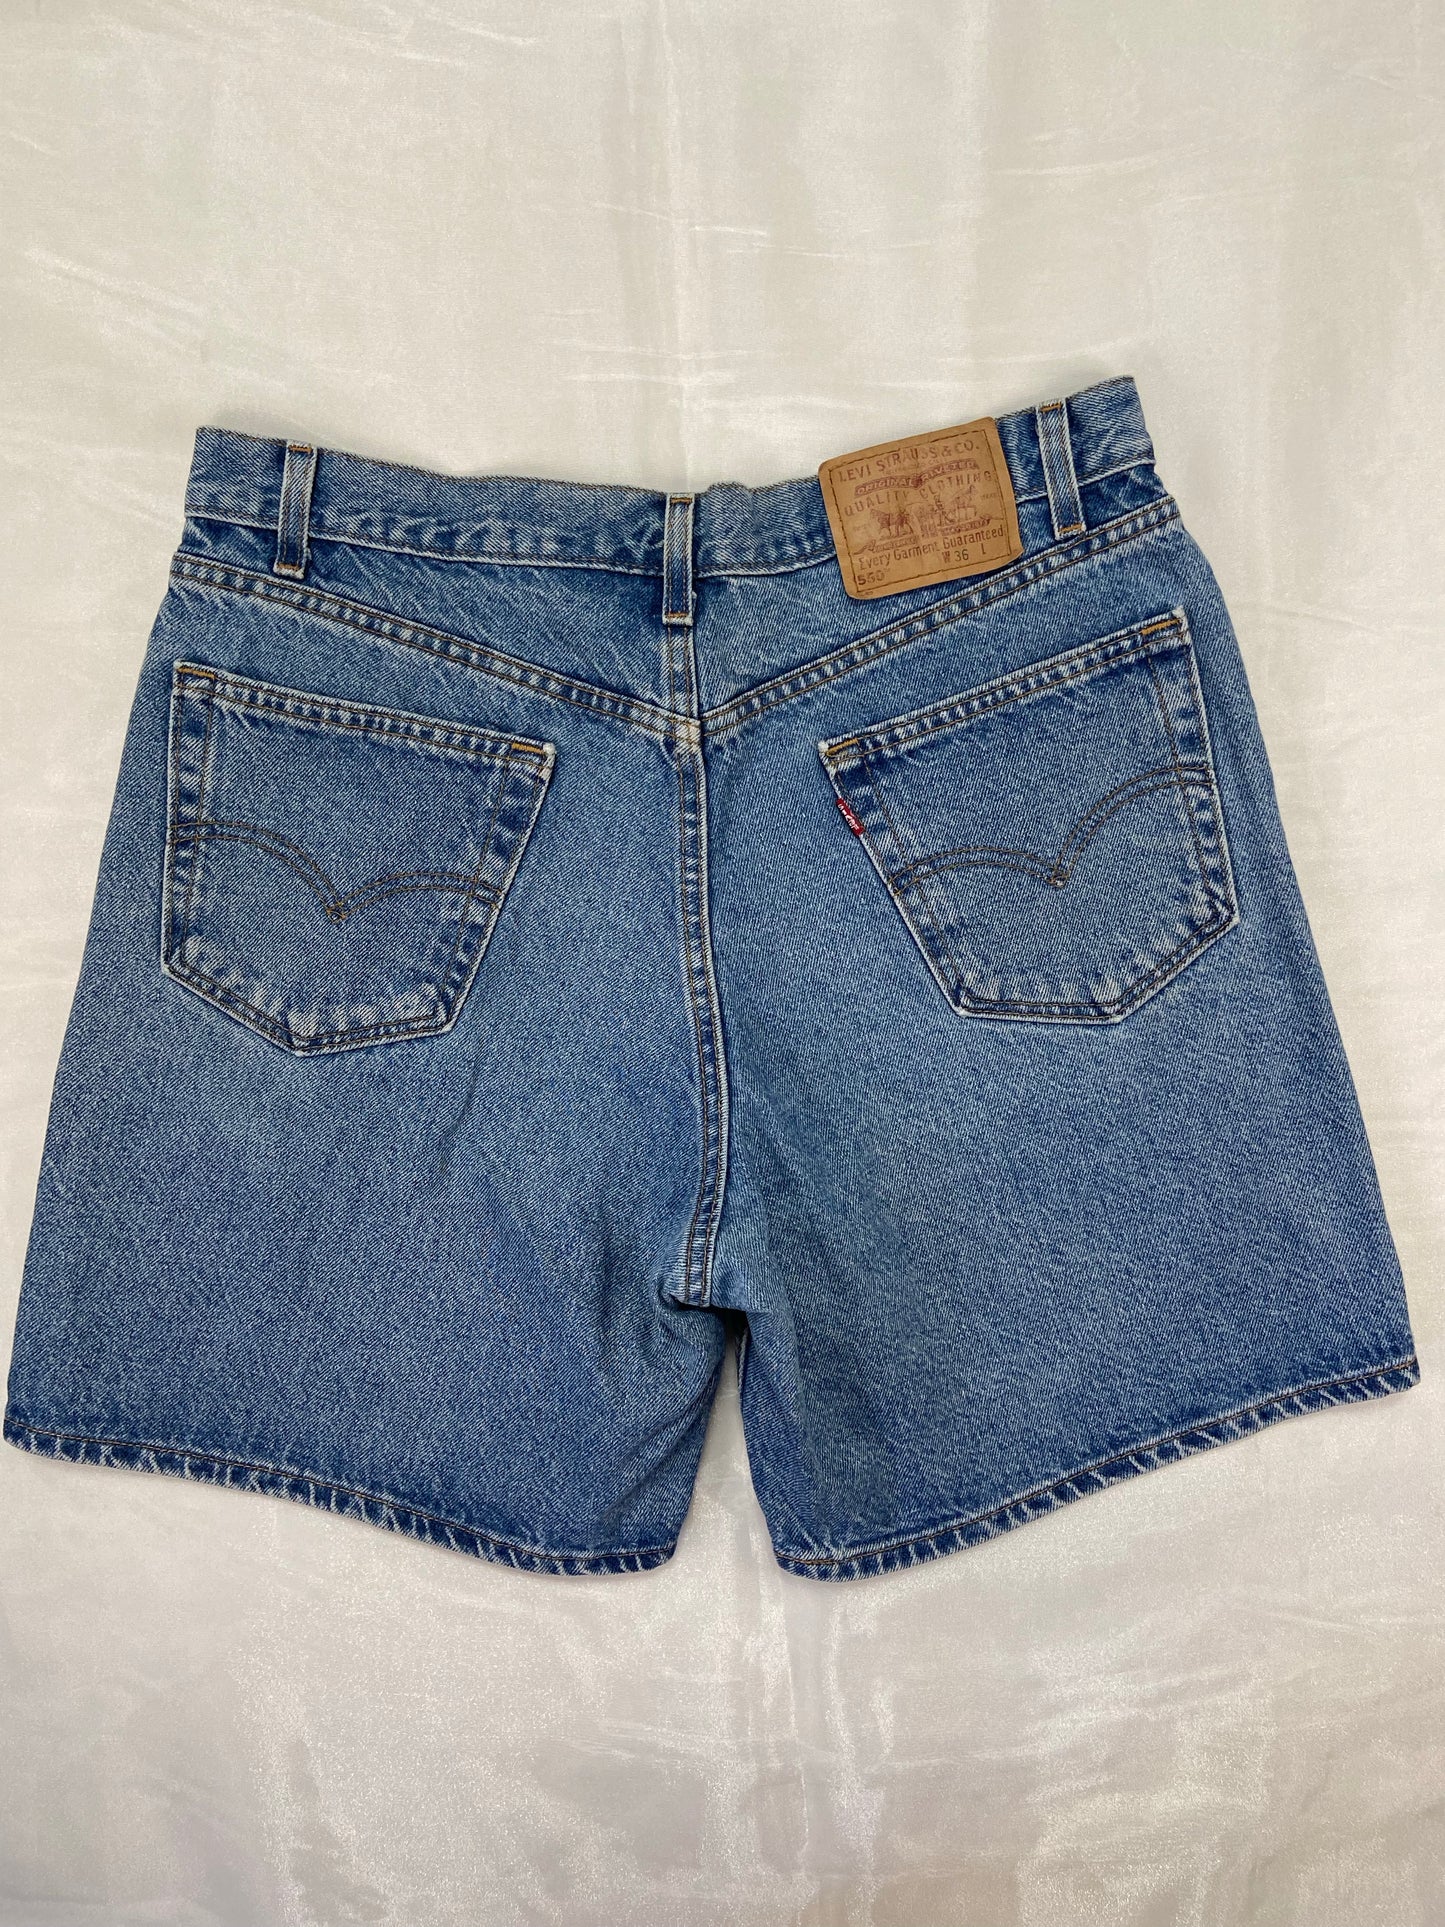 550 Levi’s Medium Wash Denim Shorts - 34”